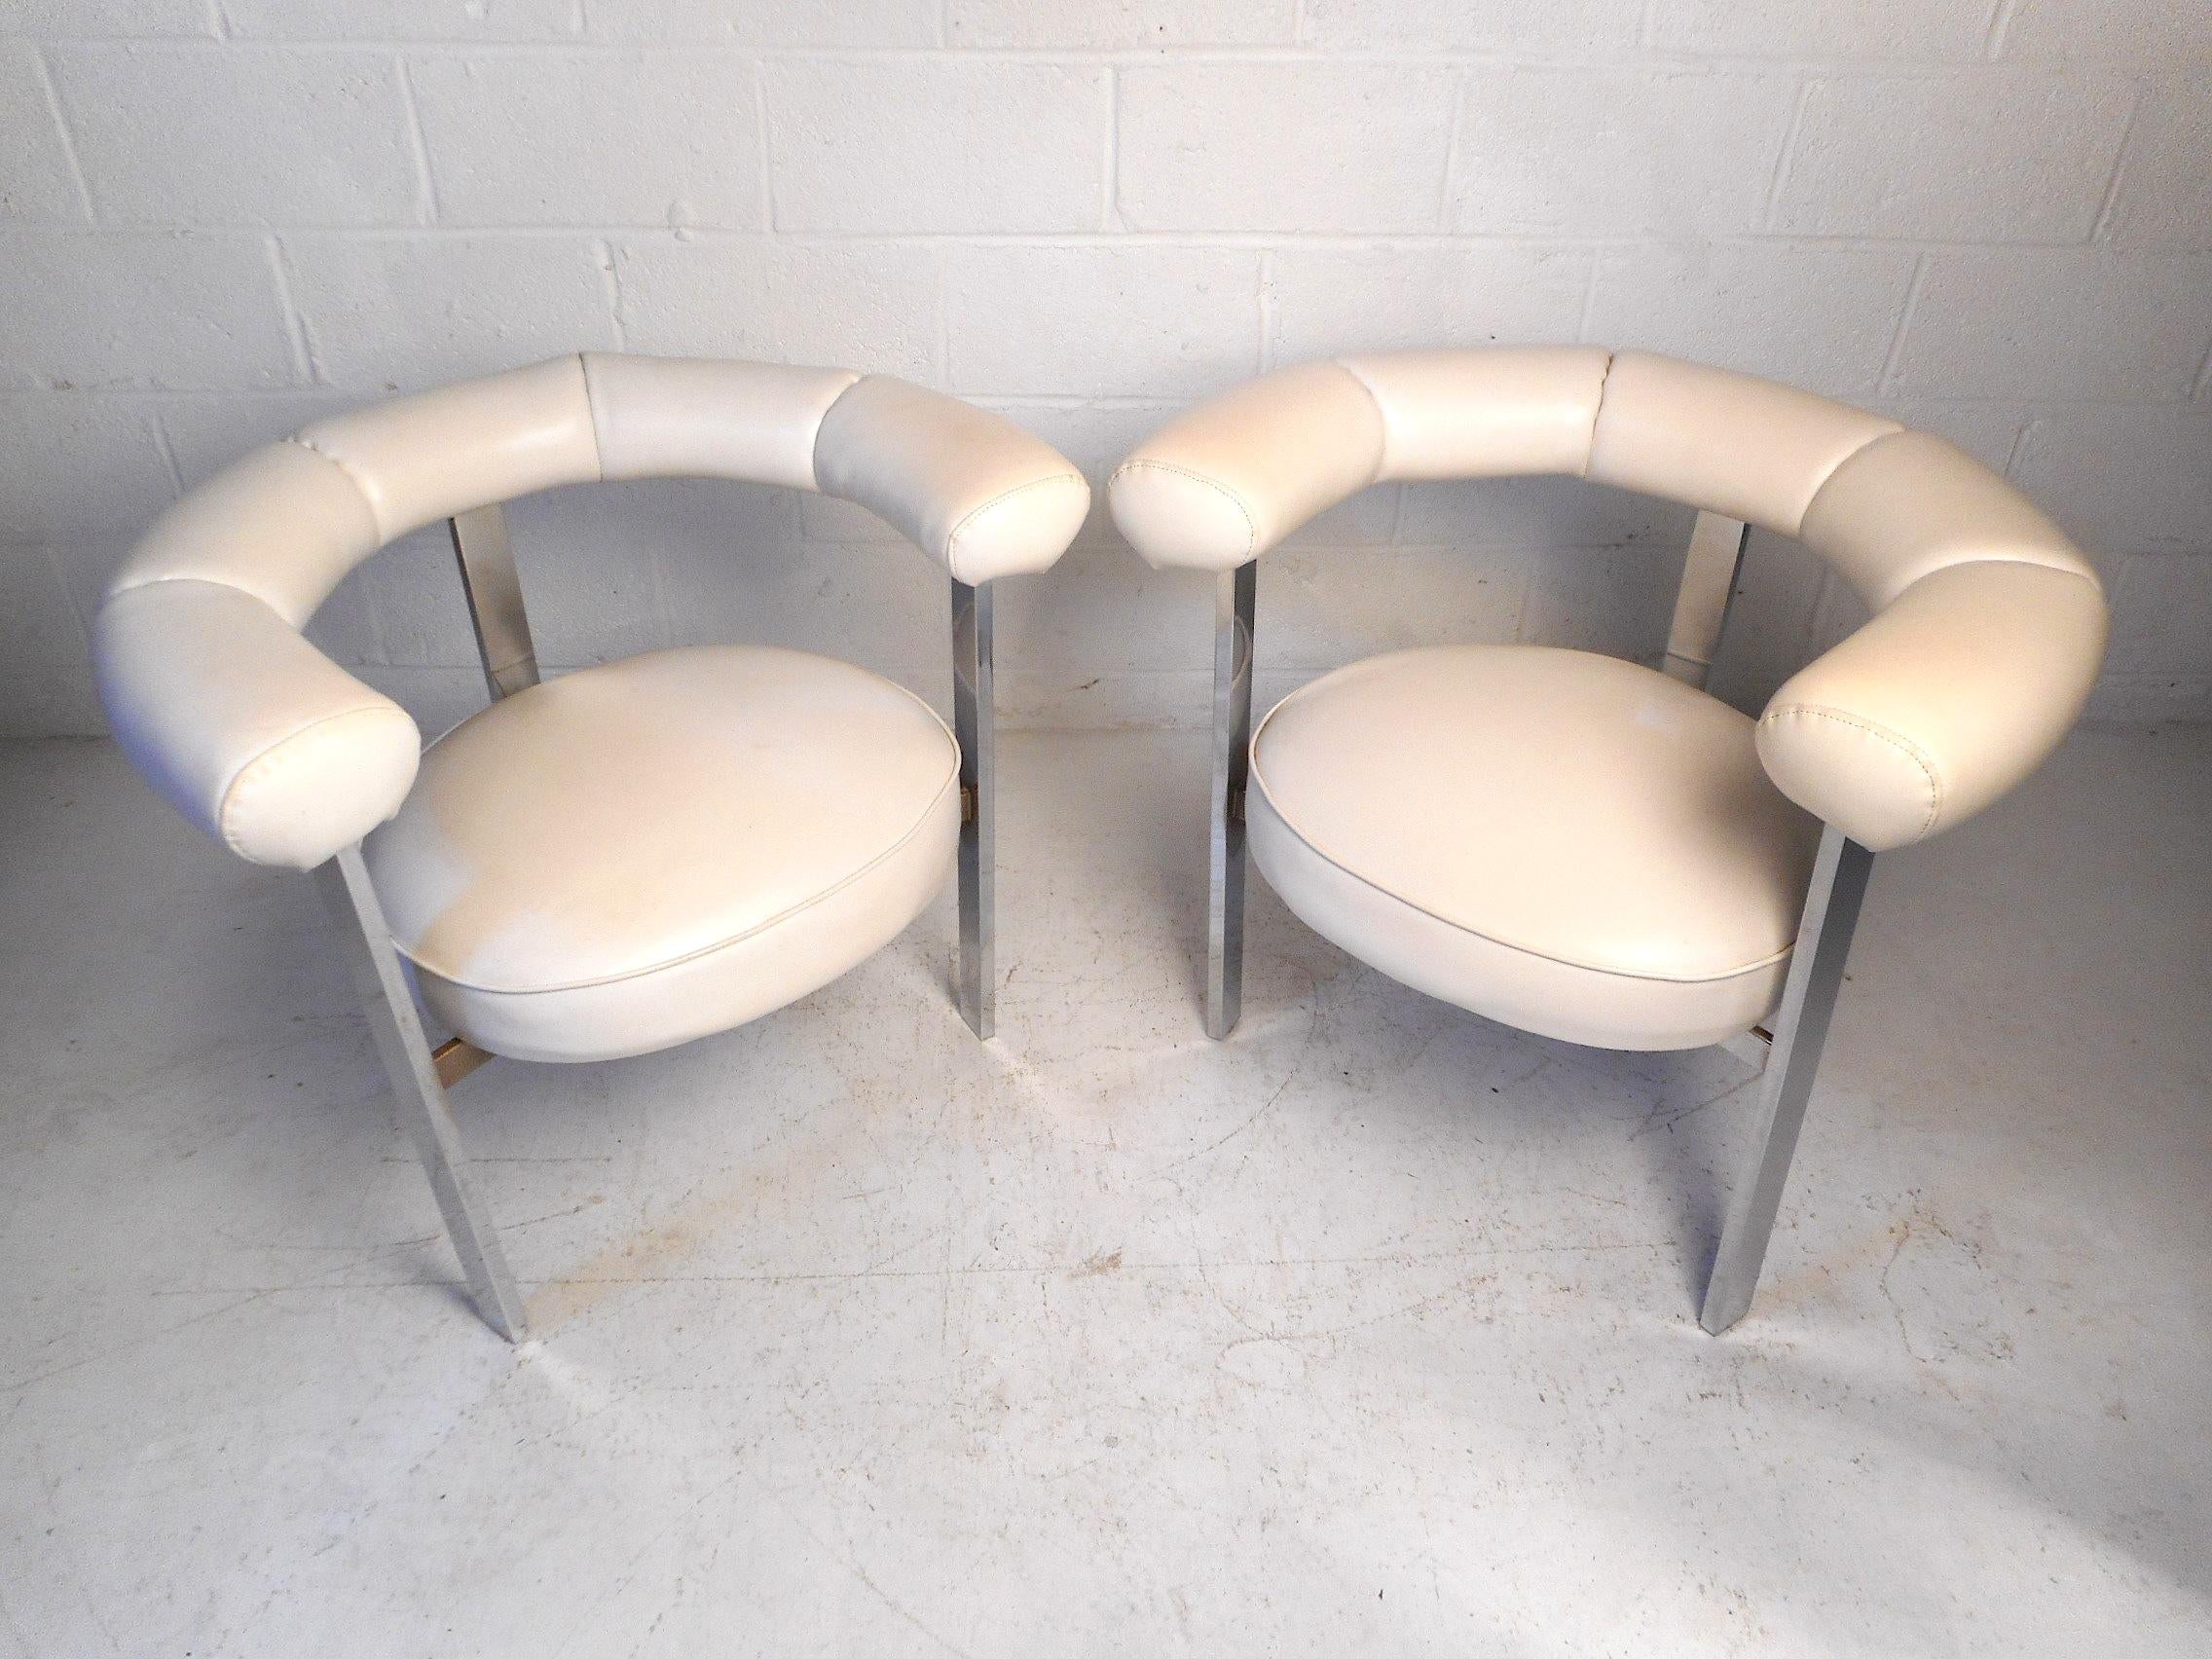 Dieses beeindruckende Set von Mid-Century Modern Barrel Chairs hat eine schöne weiße Kunstlederpolsterung, die von einem robusten Chromgestell getragen wird. Diese einzigartigen Stühle sind eine perfekte Ergänzung für die moderne Einrichtung eines